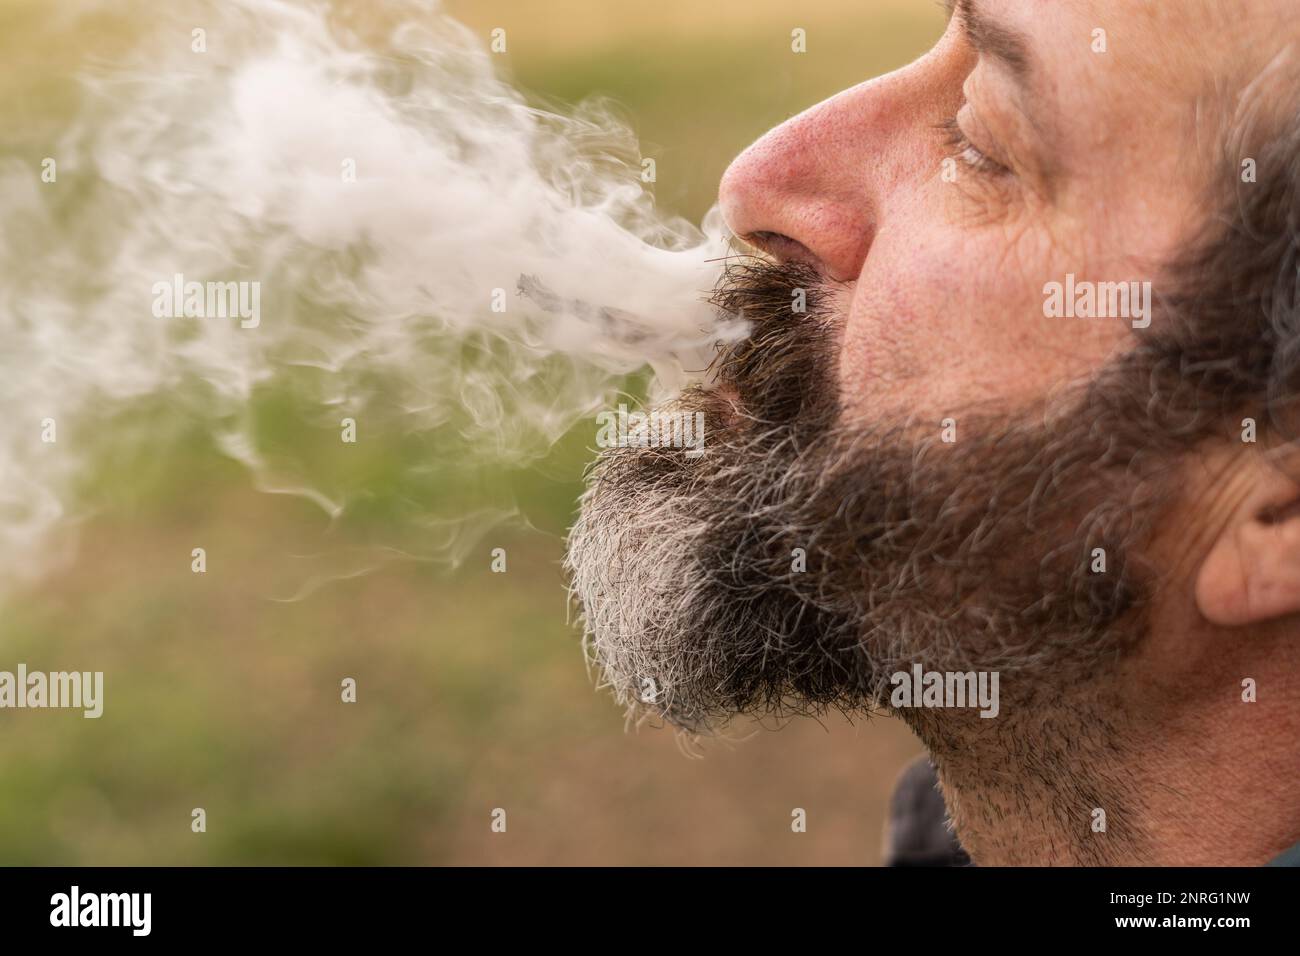 homme en profil fuisant de la marijuana et en soufflant de la fumée Banque D'Images